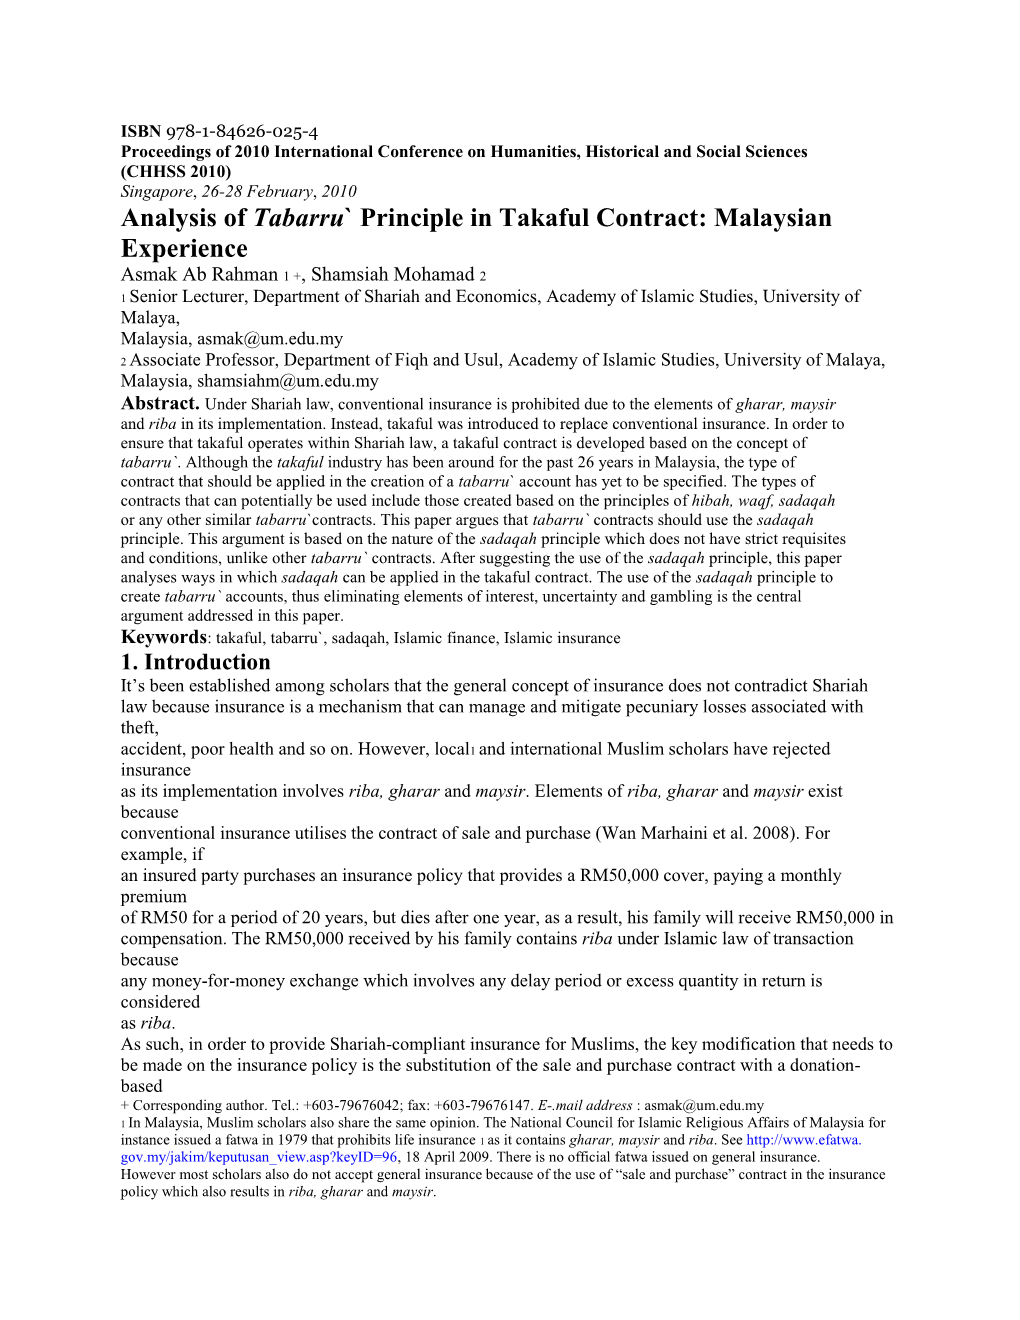 Analysis of Tabarru` Principle in Takaful Contract: Malaysian